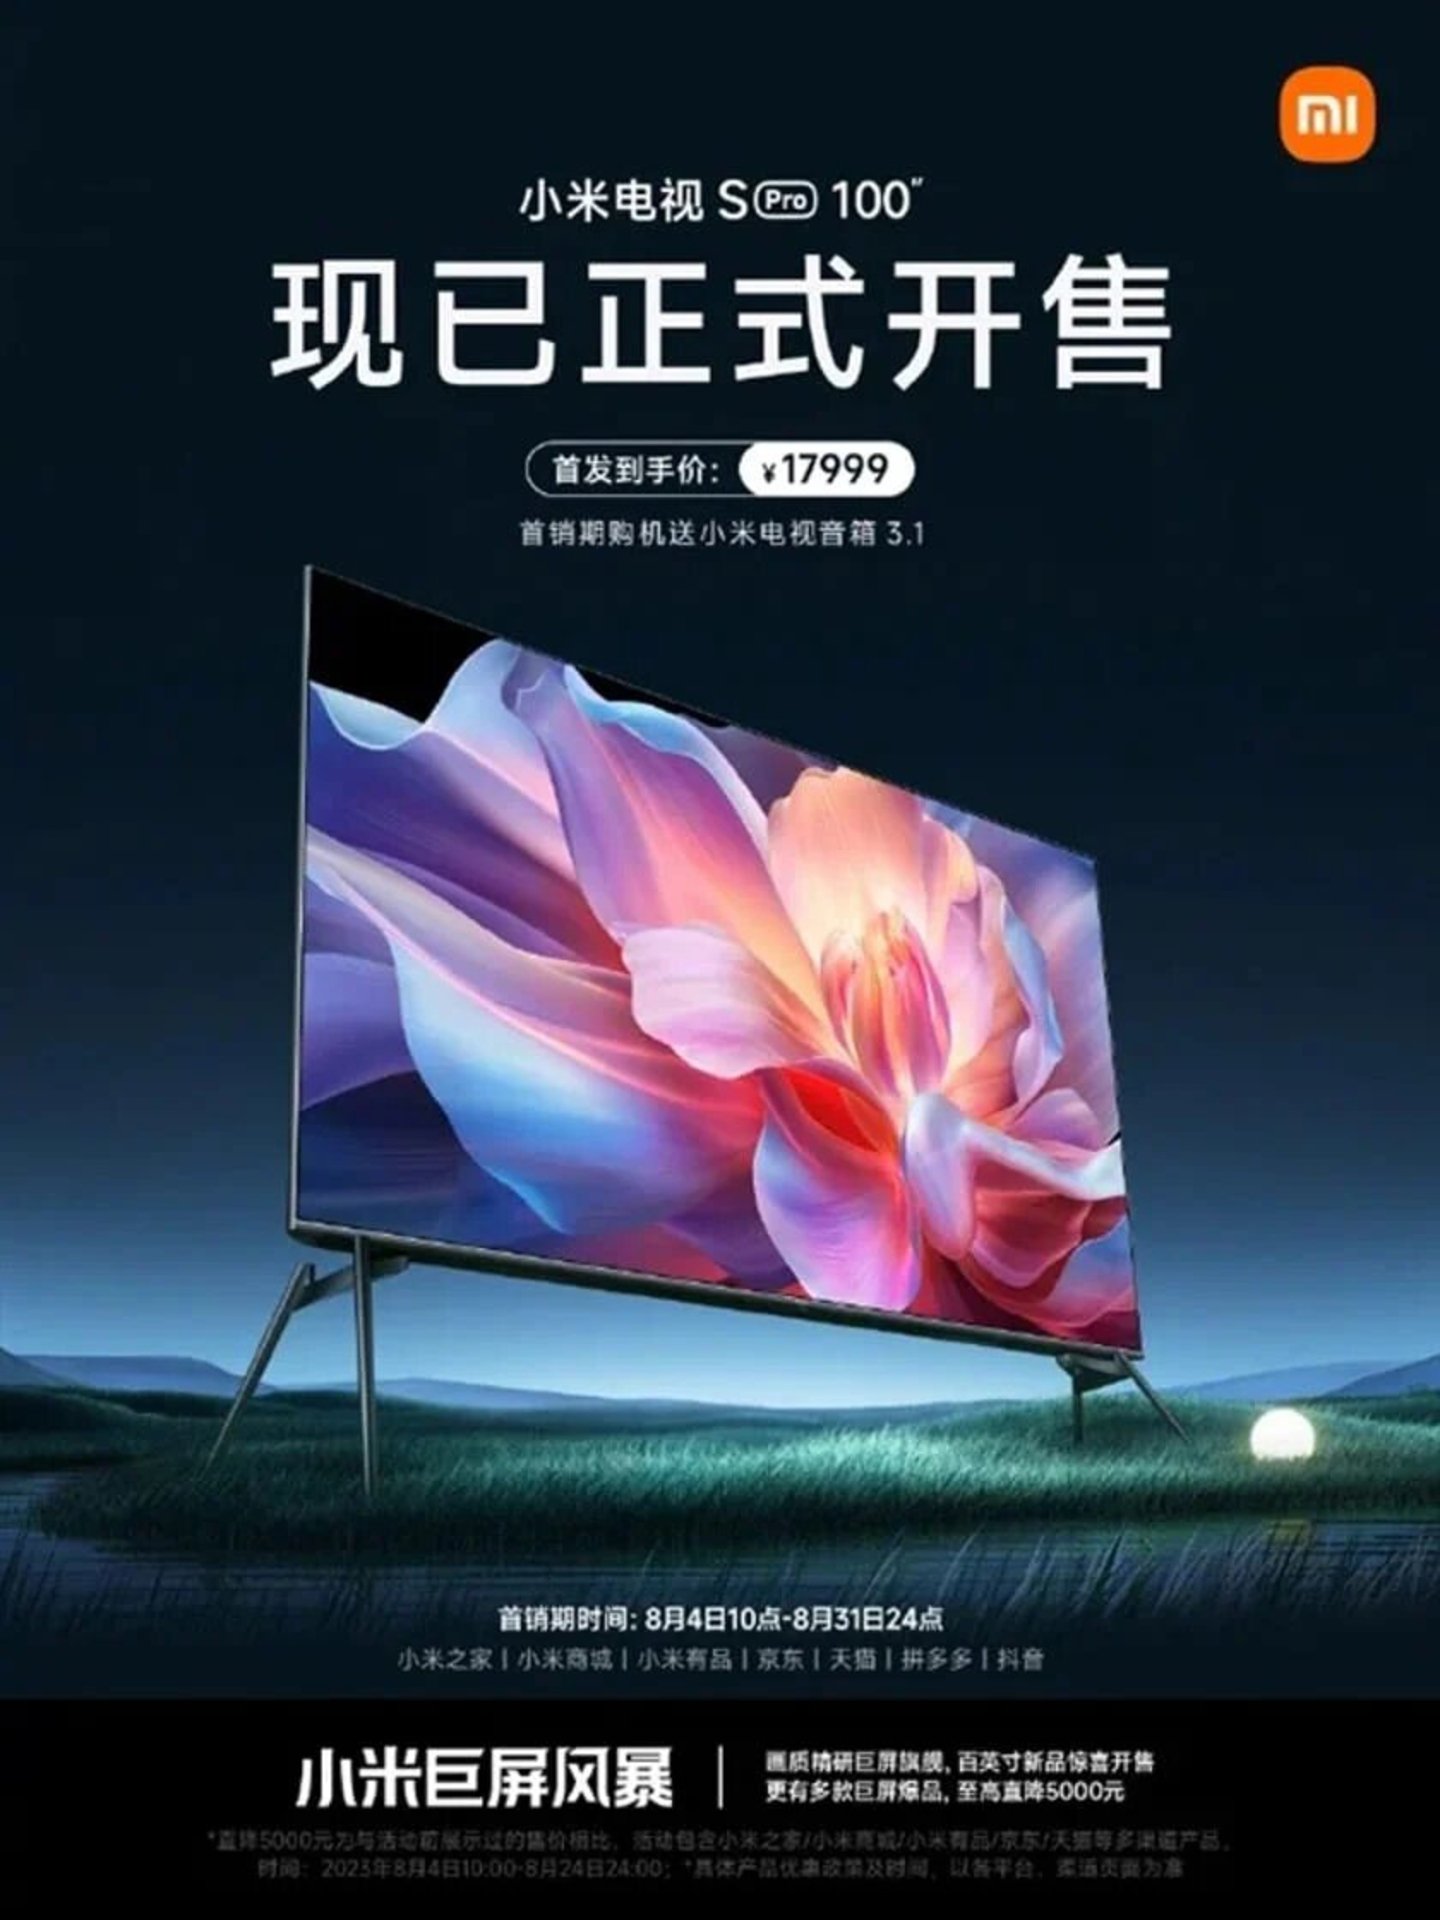 Xiaomi rompe su propio récord lanzando una gigantesca televisión de 100 pulgadas